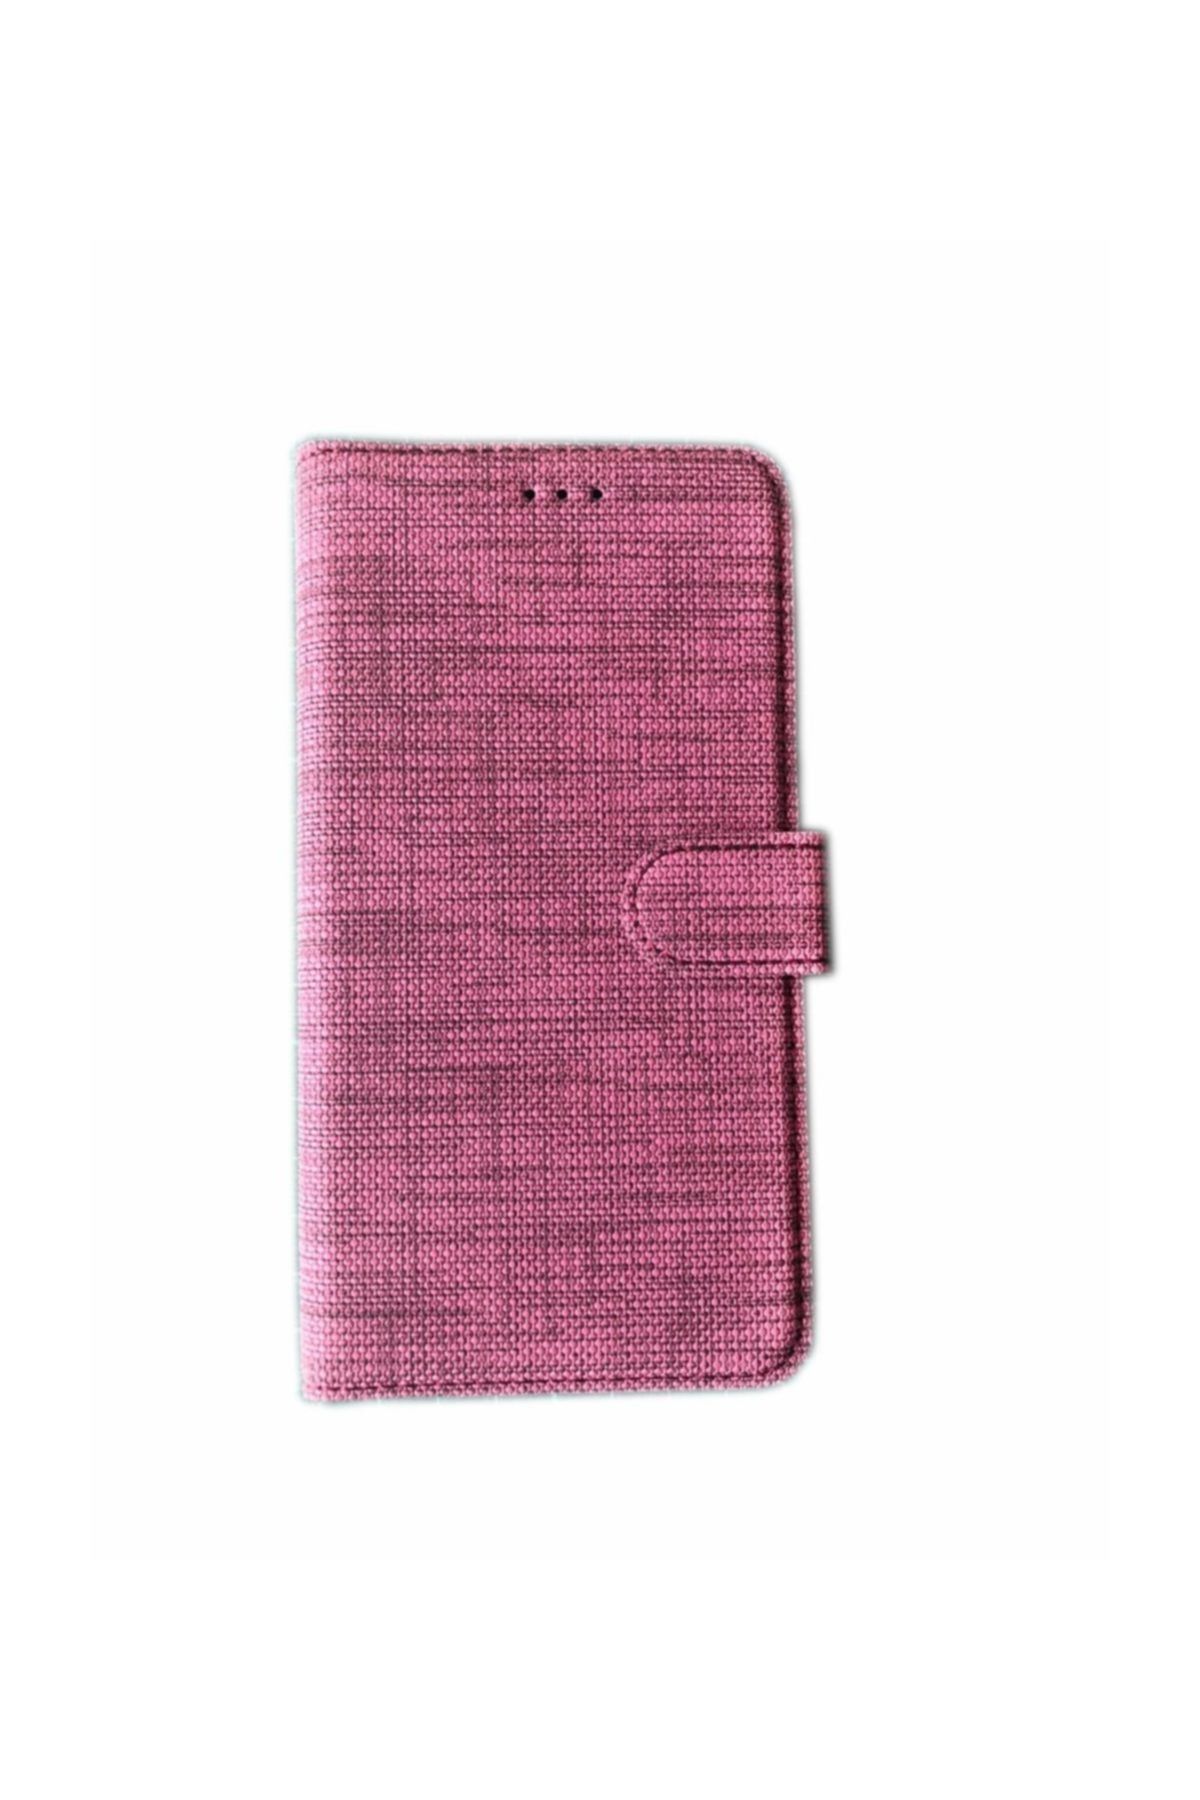 KNY Apple Iphone 8 Kılıf Kumaş Desenli Cüzdanlı Kapaklı Kartlıklı Kılıf